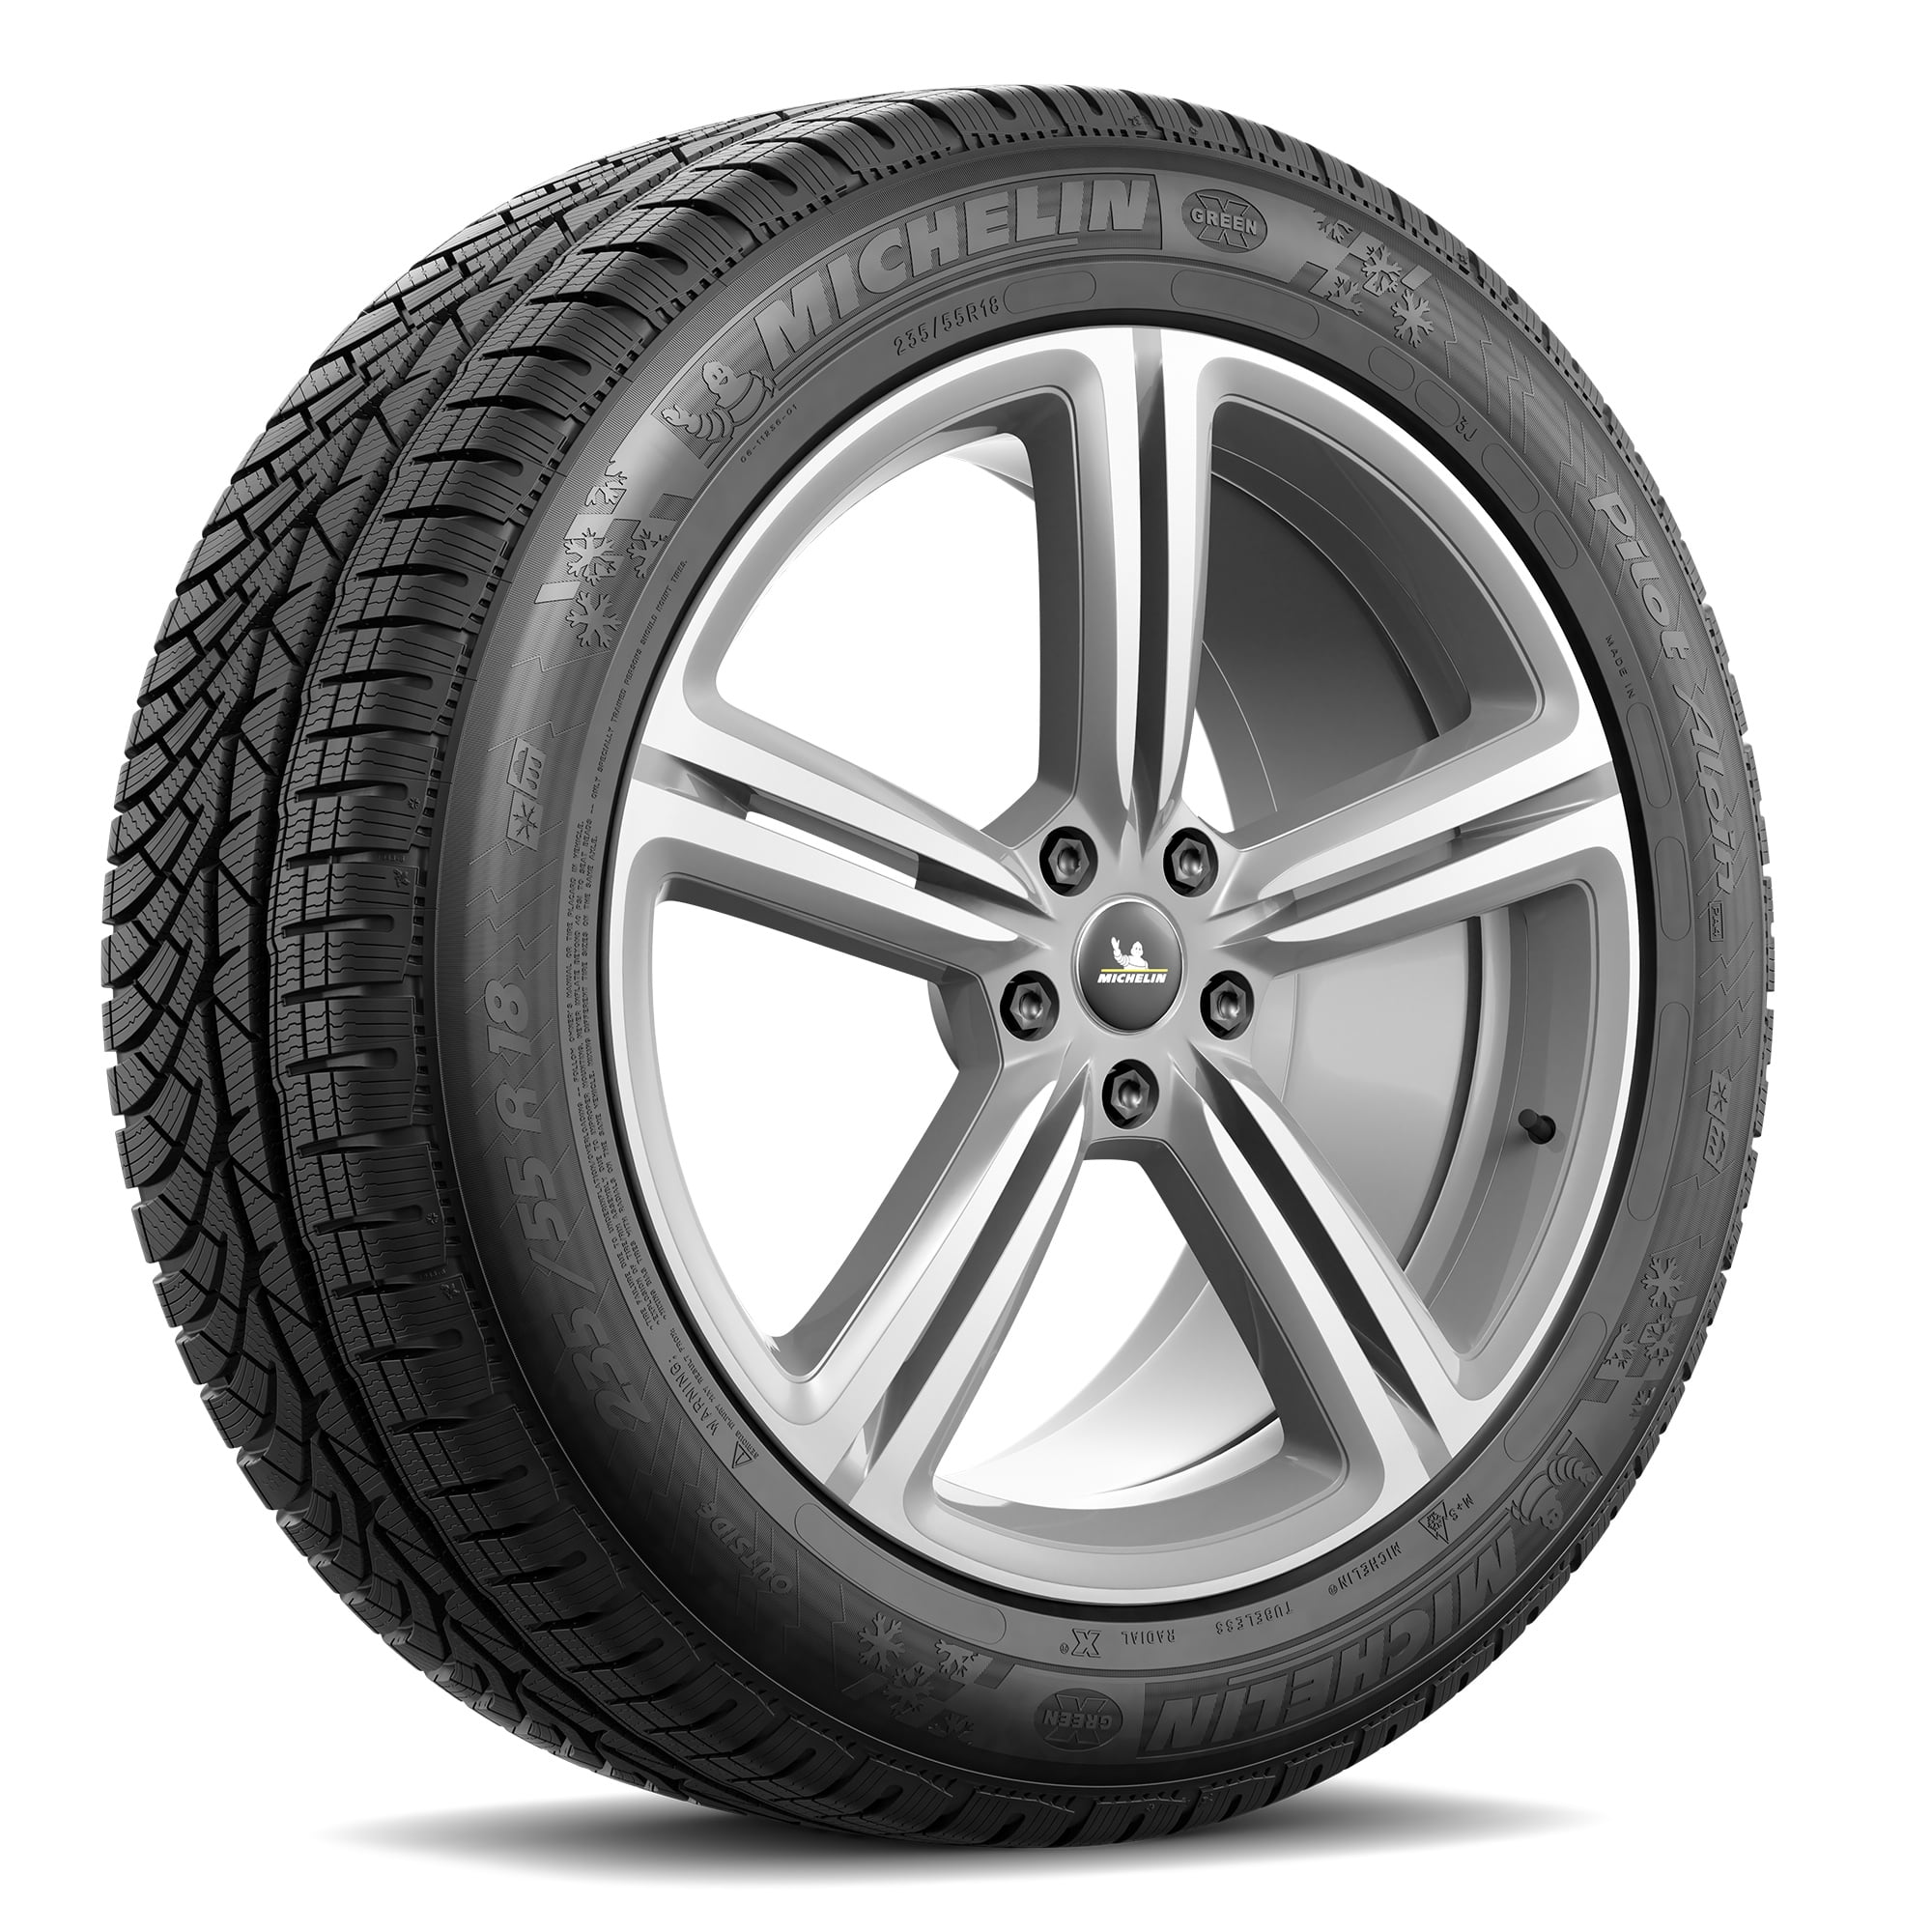 Latitude 255/55-18 Michelin Winter Tire Alpin 109 H